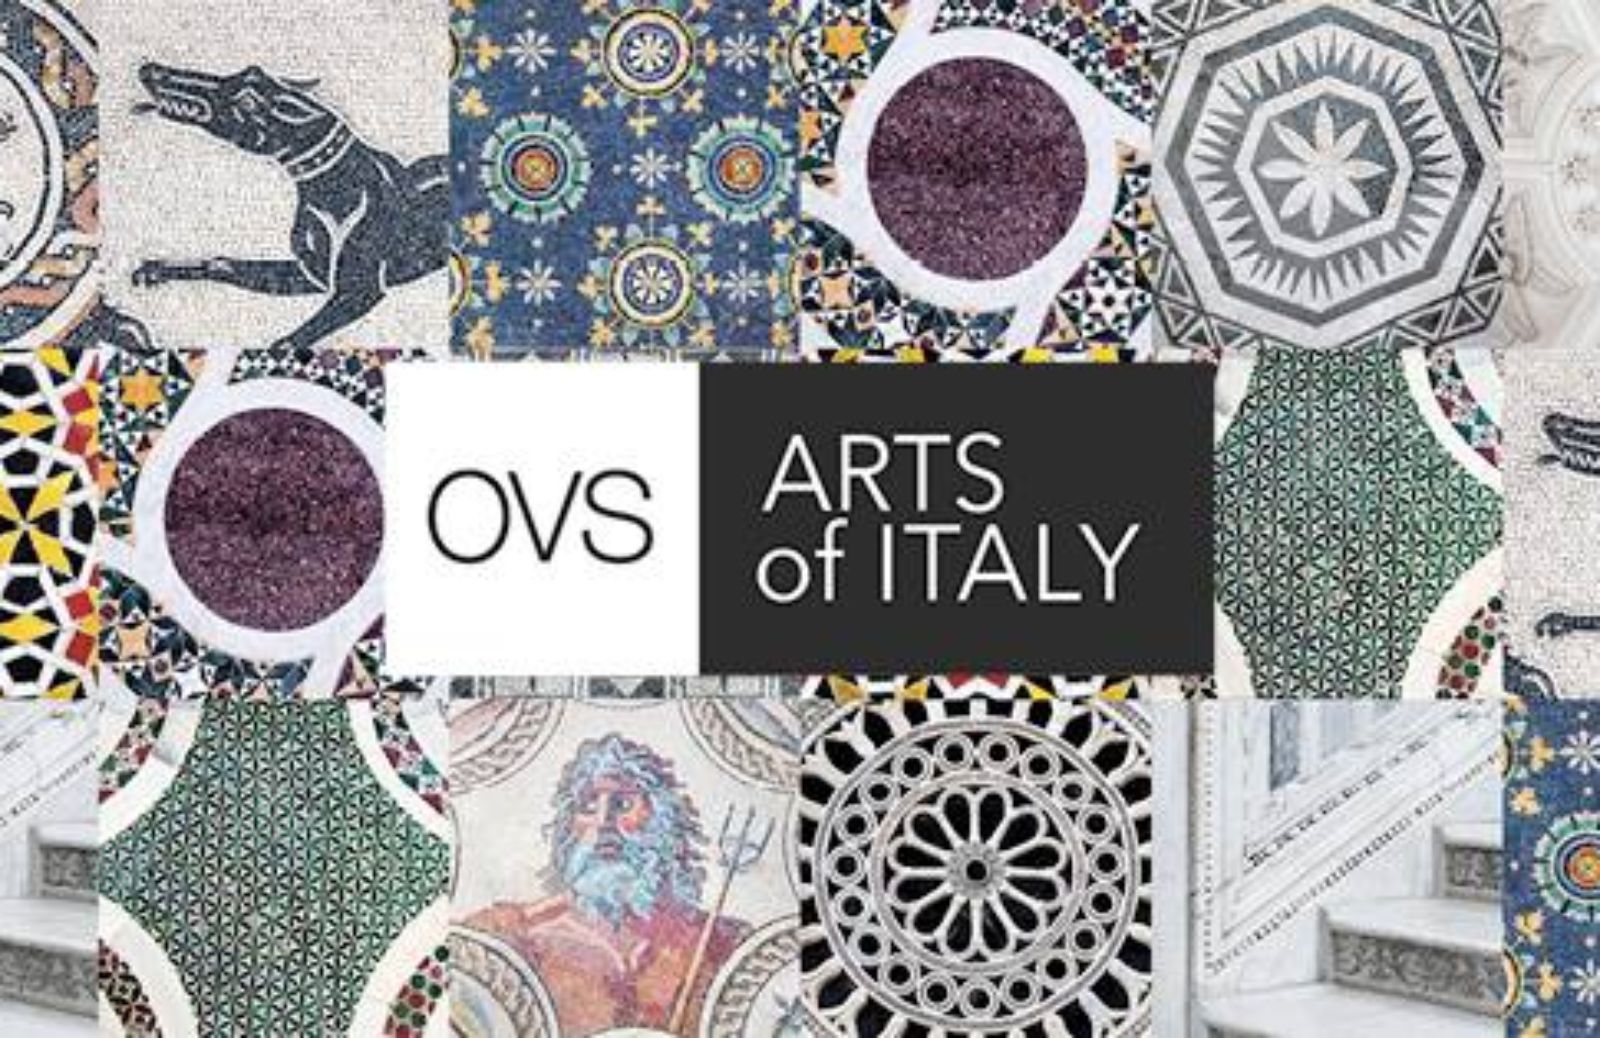 Arts of Italy: Ovs omaggia l'arte italiana con una collezione esclusiva